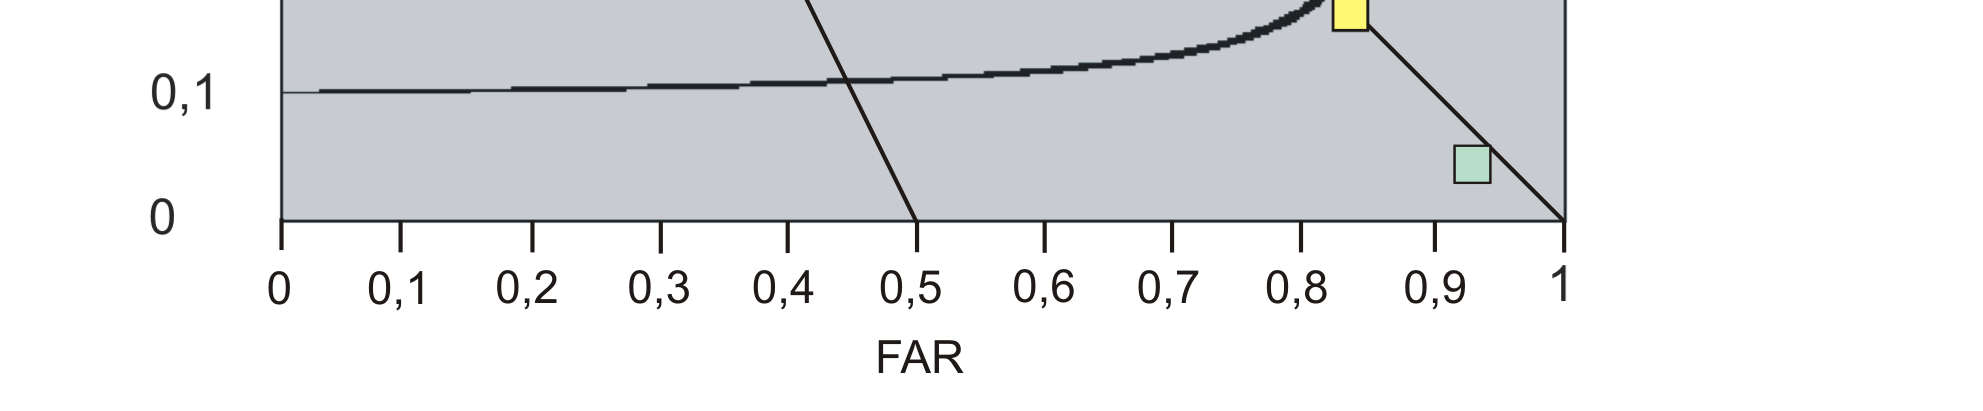 Graf 5b Graf 5c Porovnání předpovědí za celé zkoumané období ze všech povodí dohromady na ose x jsou vyneseny hodnoty FAR, na ose y POD a černě jsou vyneseny